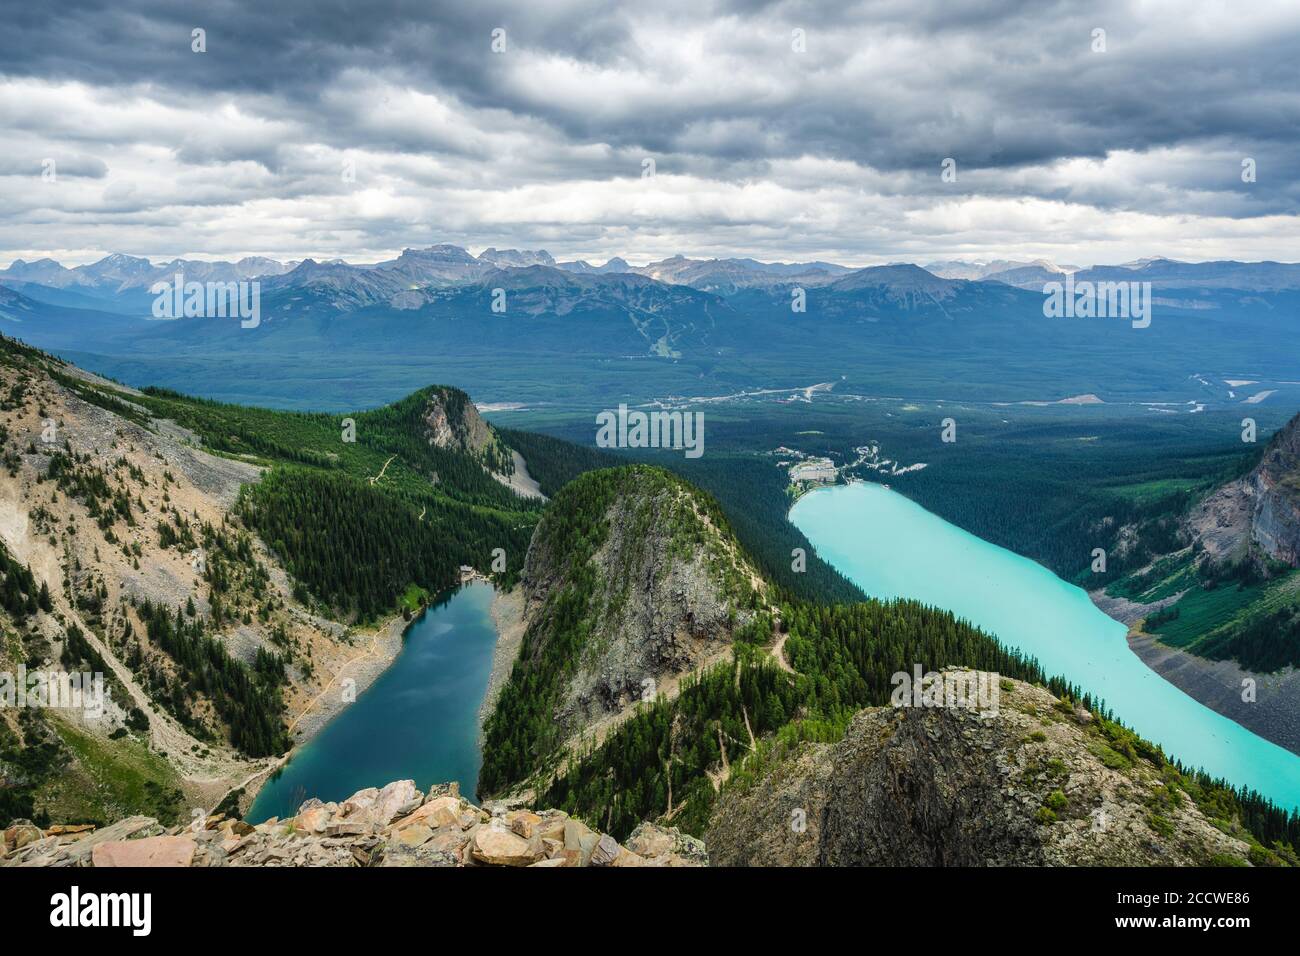 Vista panorámica de Moody que muestra el Lago Louise y el Lago Agnes en el Parque Nacional Banff, Alberta, Canadá. Foto de stock